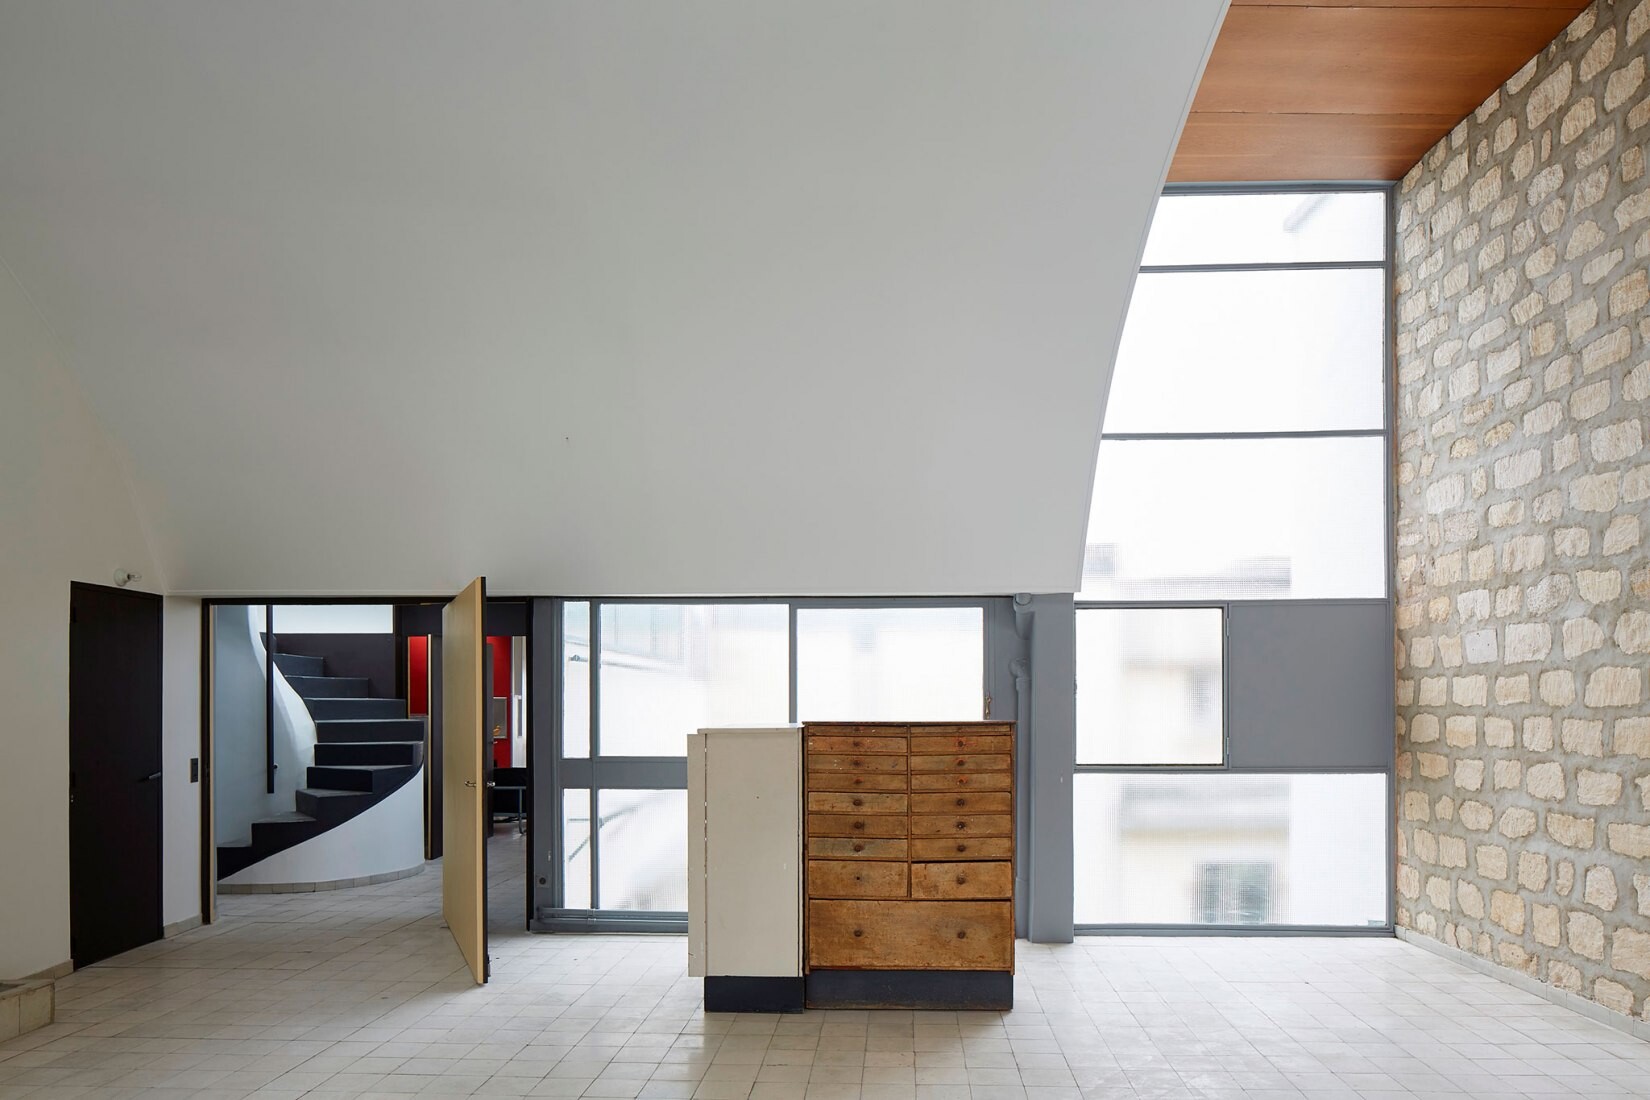 Stavět ze světla. Le Corbusierův apartmán v Paříži udiví speciálním kouzlem